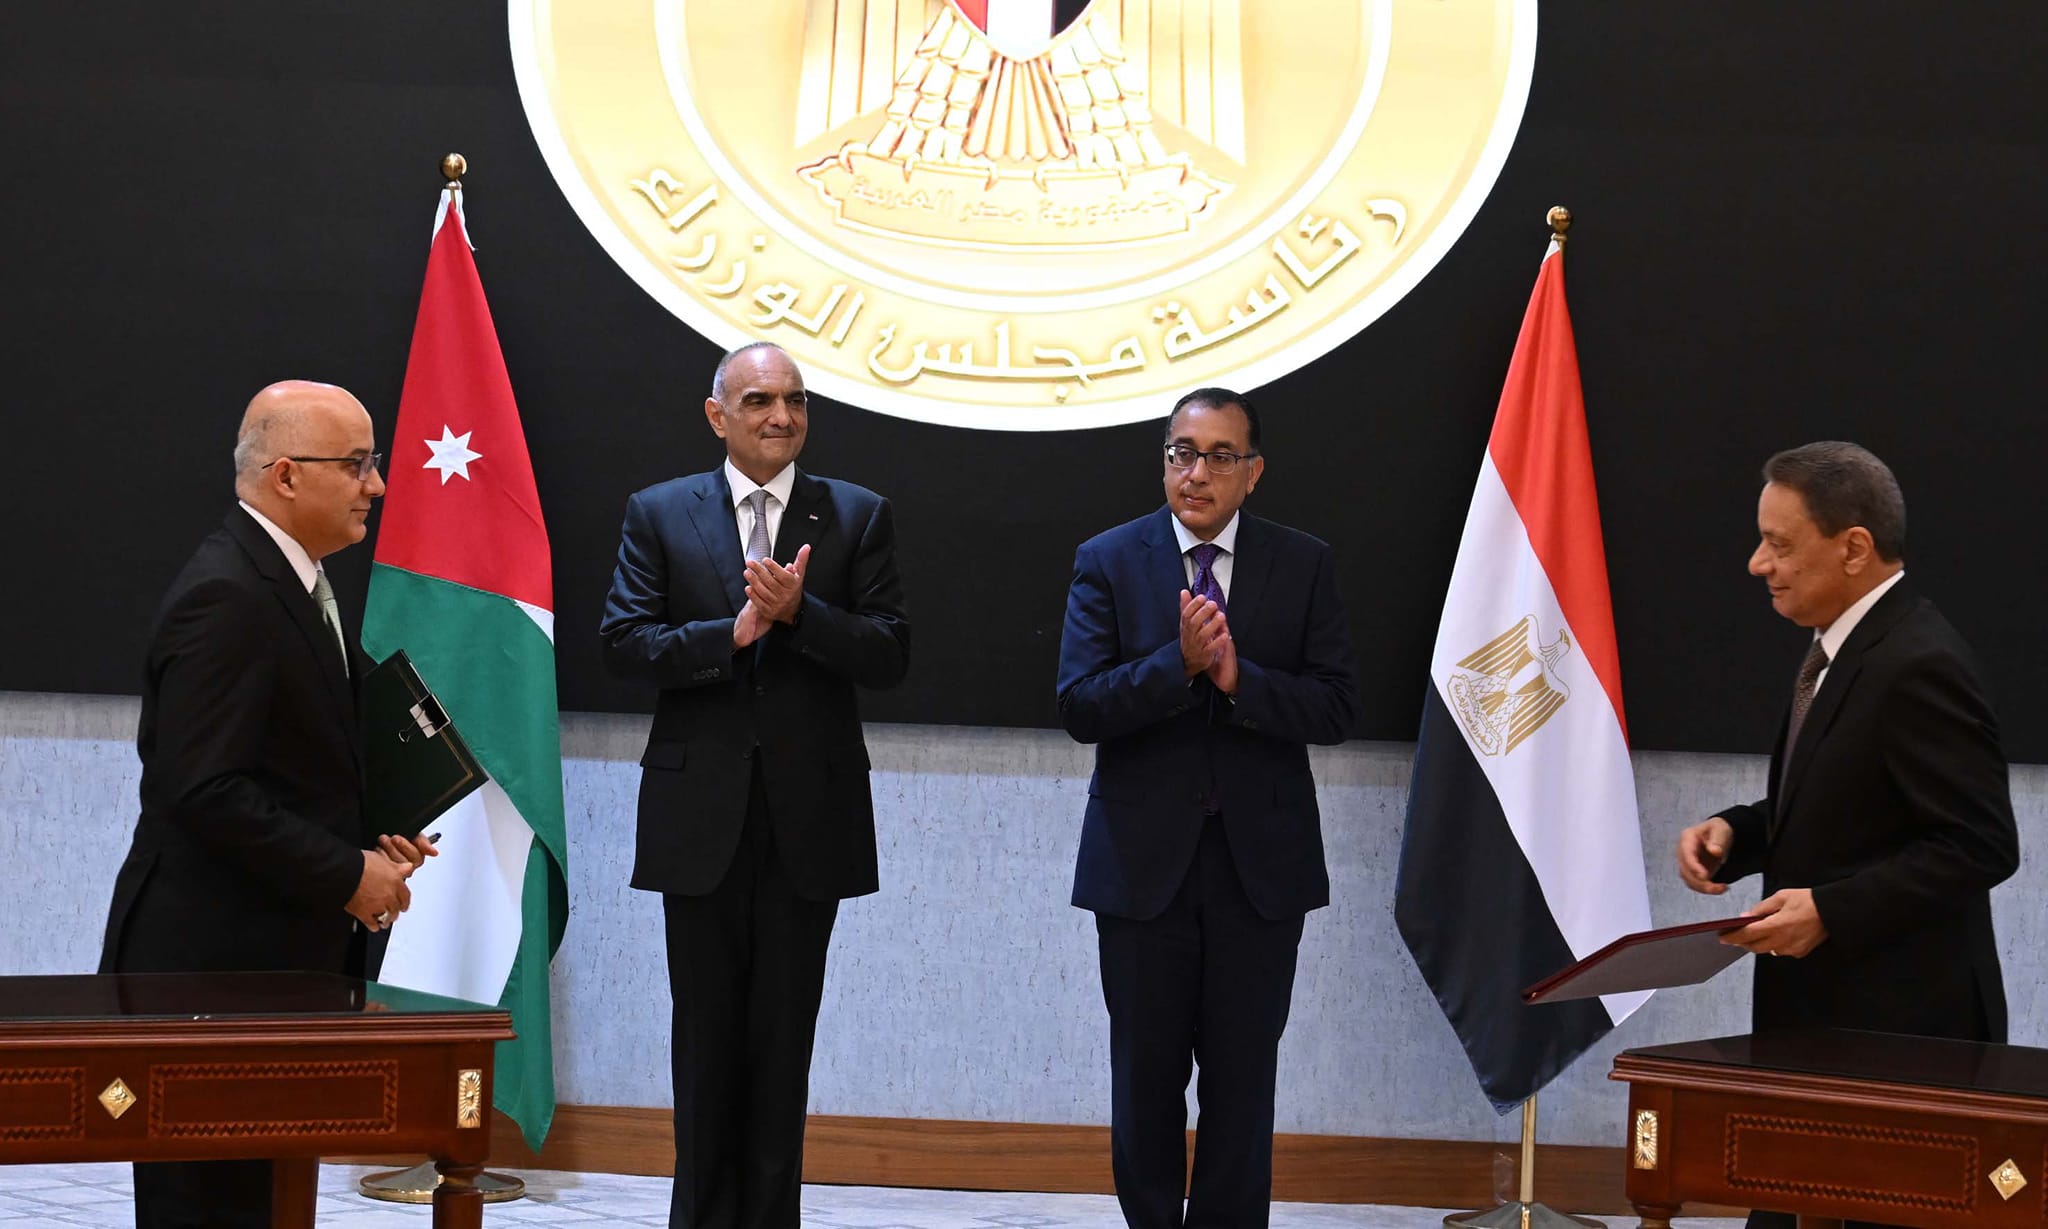  توقيع محضر اجتماعات الدورة الـ 32 للجنة العليا المصرية الأردنية المشتركة